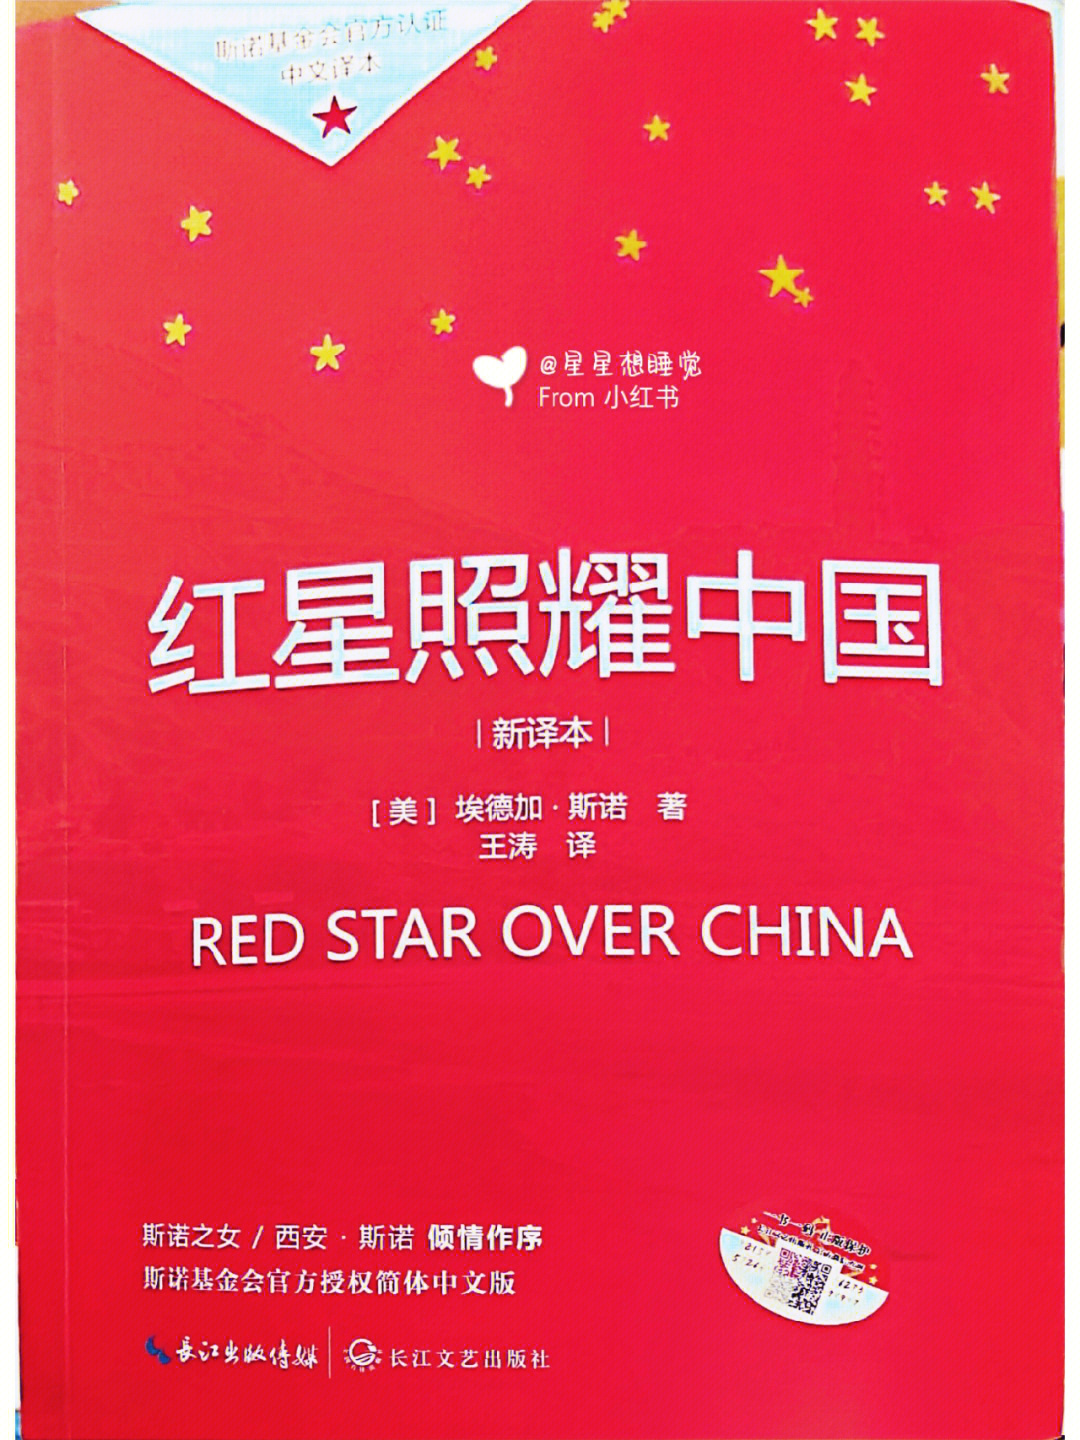 红星照耀中国第一篇第四节批注